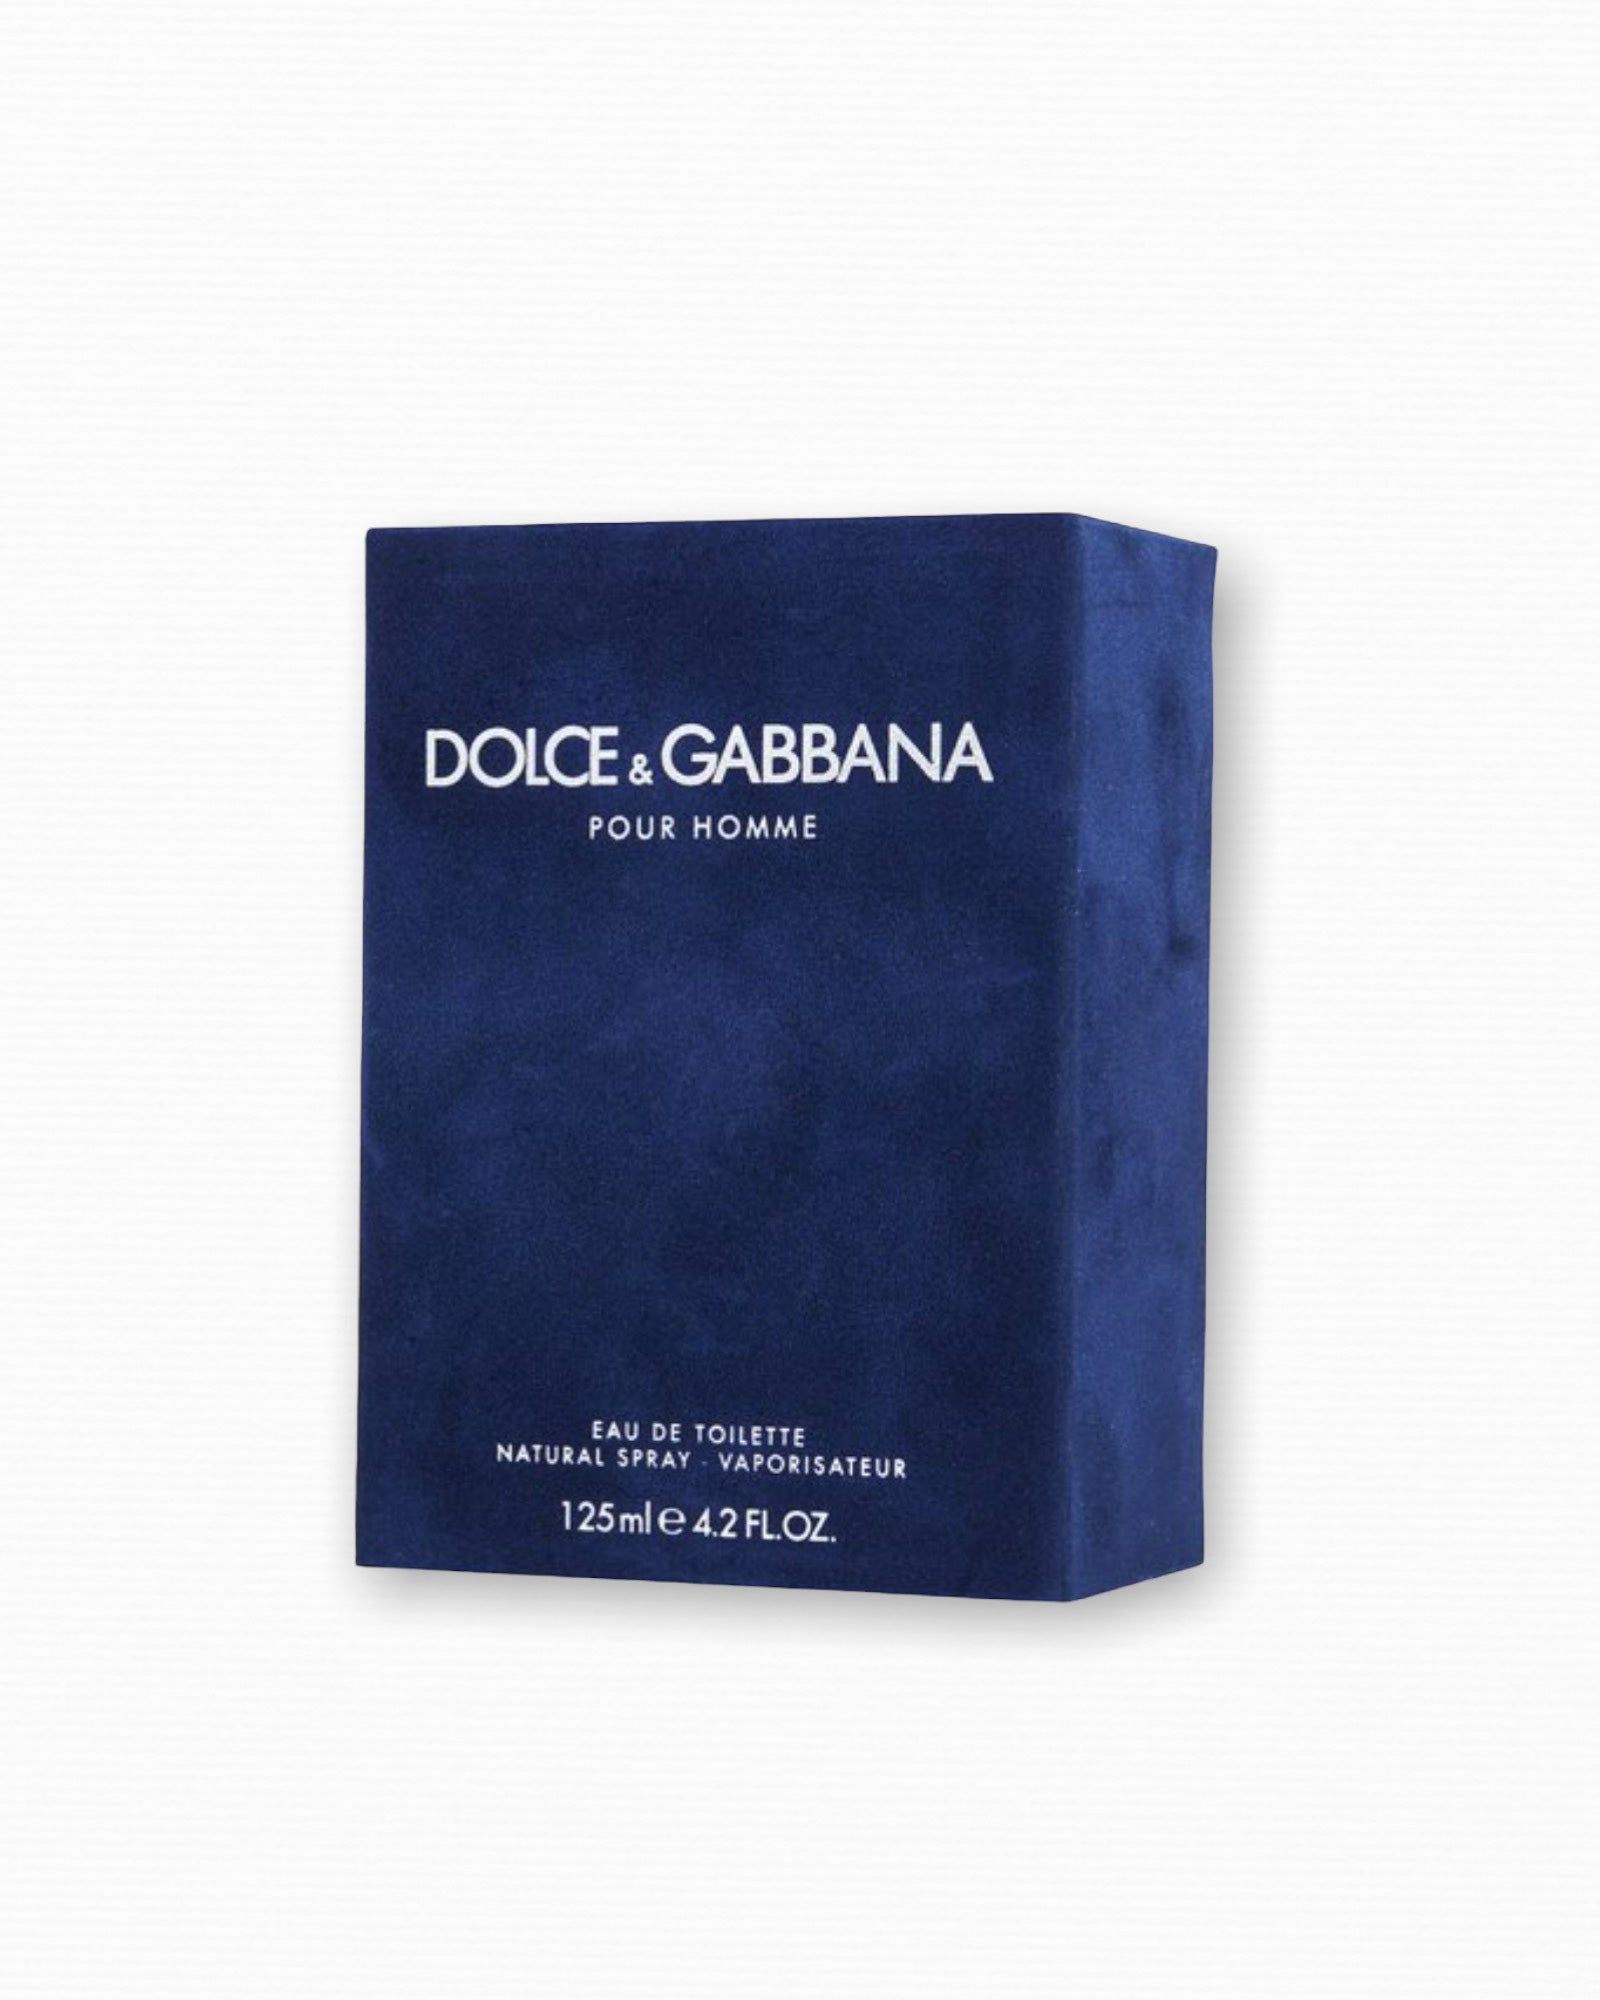 Dolce & Gabbana Pour Homme for Men EDT 4.2 oz